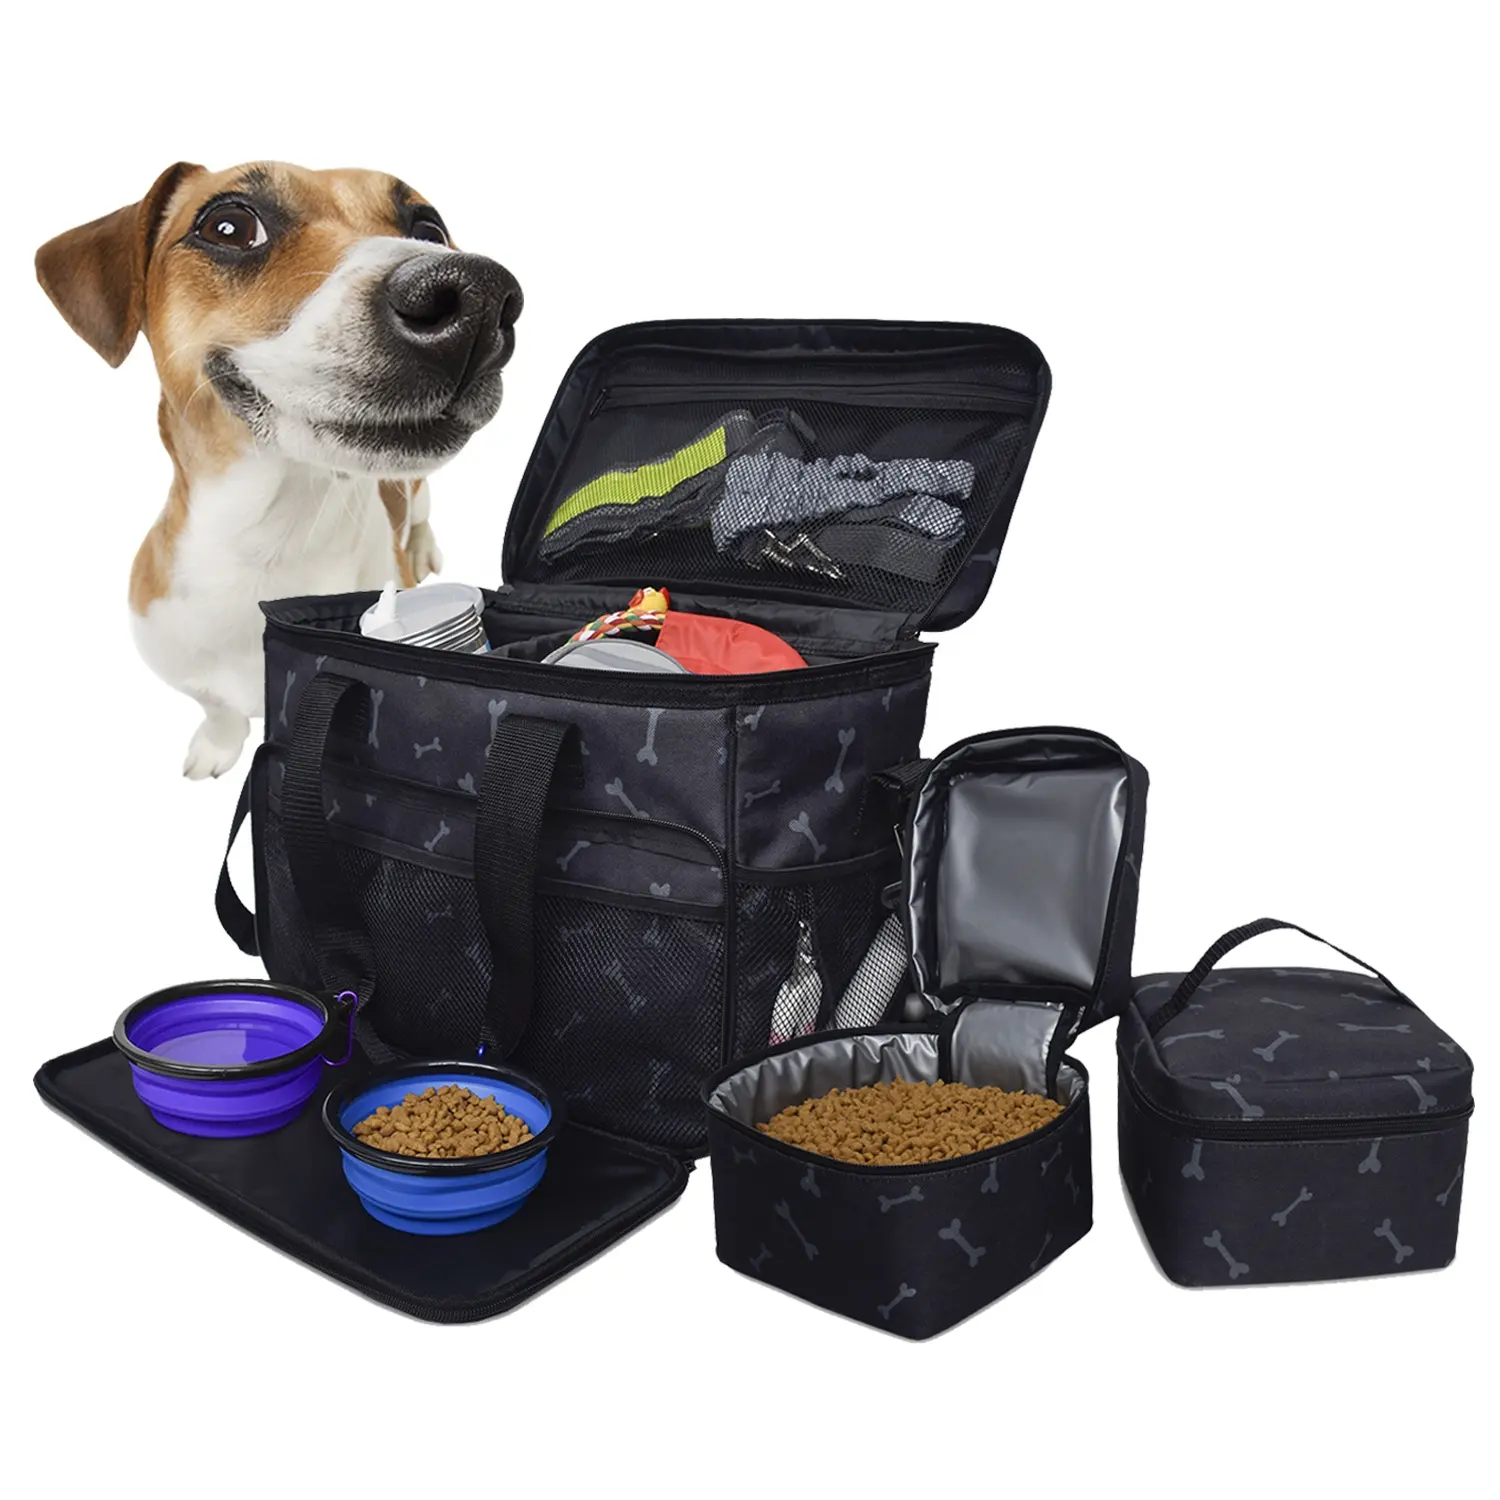 נייד תעופה אישר בסוף השבוע נסיעות סט 2 מזון מכולות Pet כלב נסיעות ארגונית תיק עם רב כיסי פונקציה